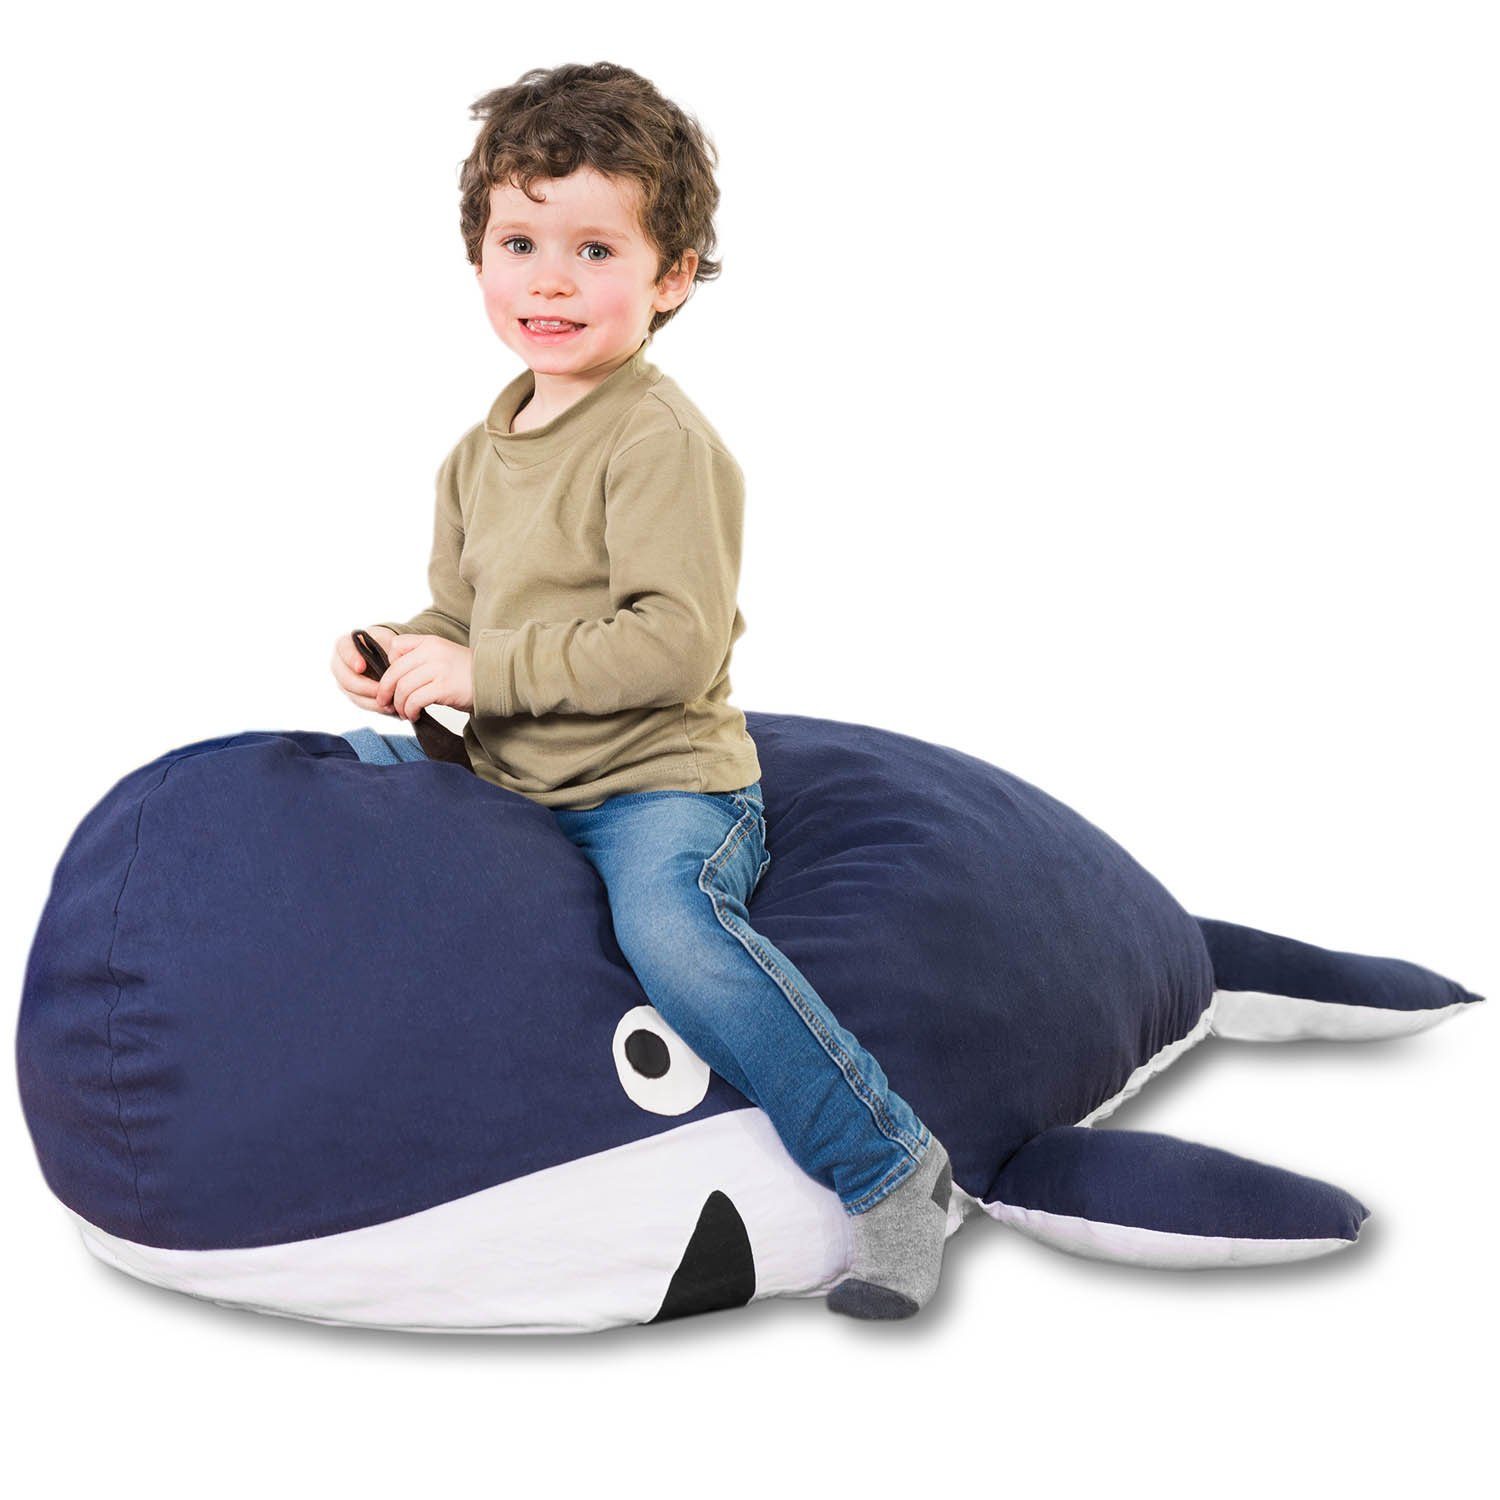 Smoothy Sitzsack Kindersitzsack Tierform Kinder, (Sitzkissen Baumwollbezug Wal Kindermöbel), Sitzkissen für